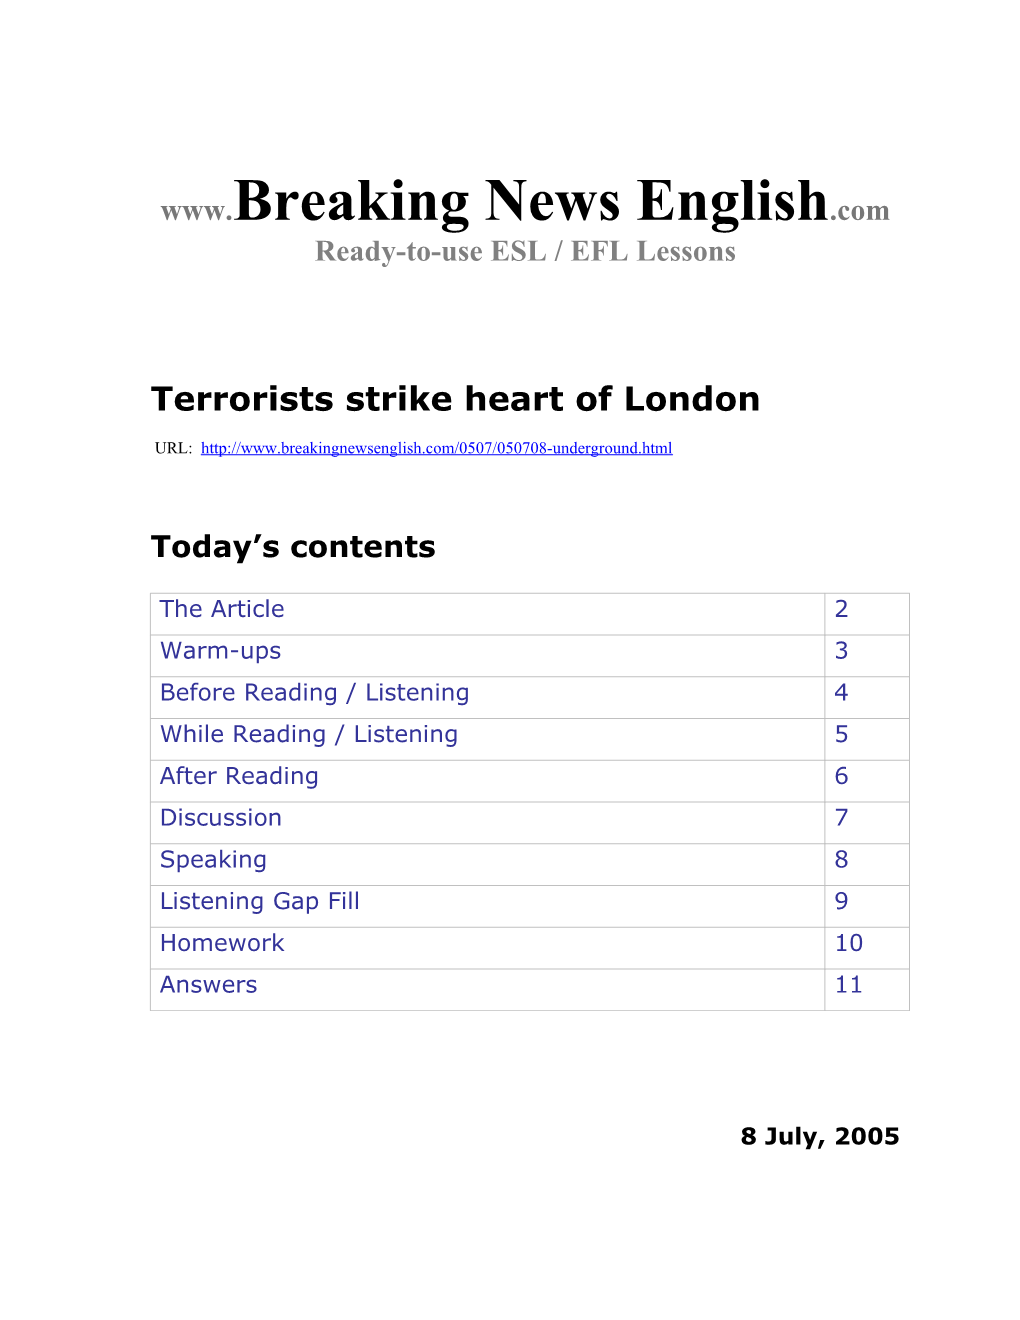 Terrorists Strike Heart of London